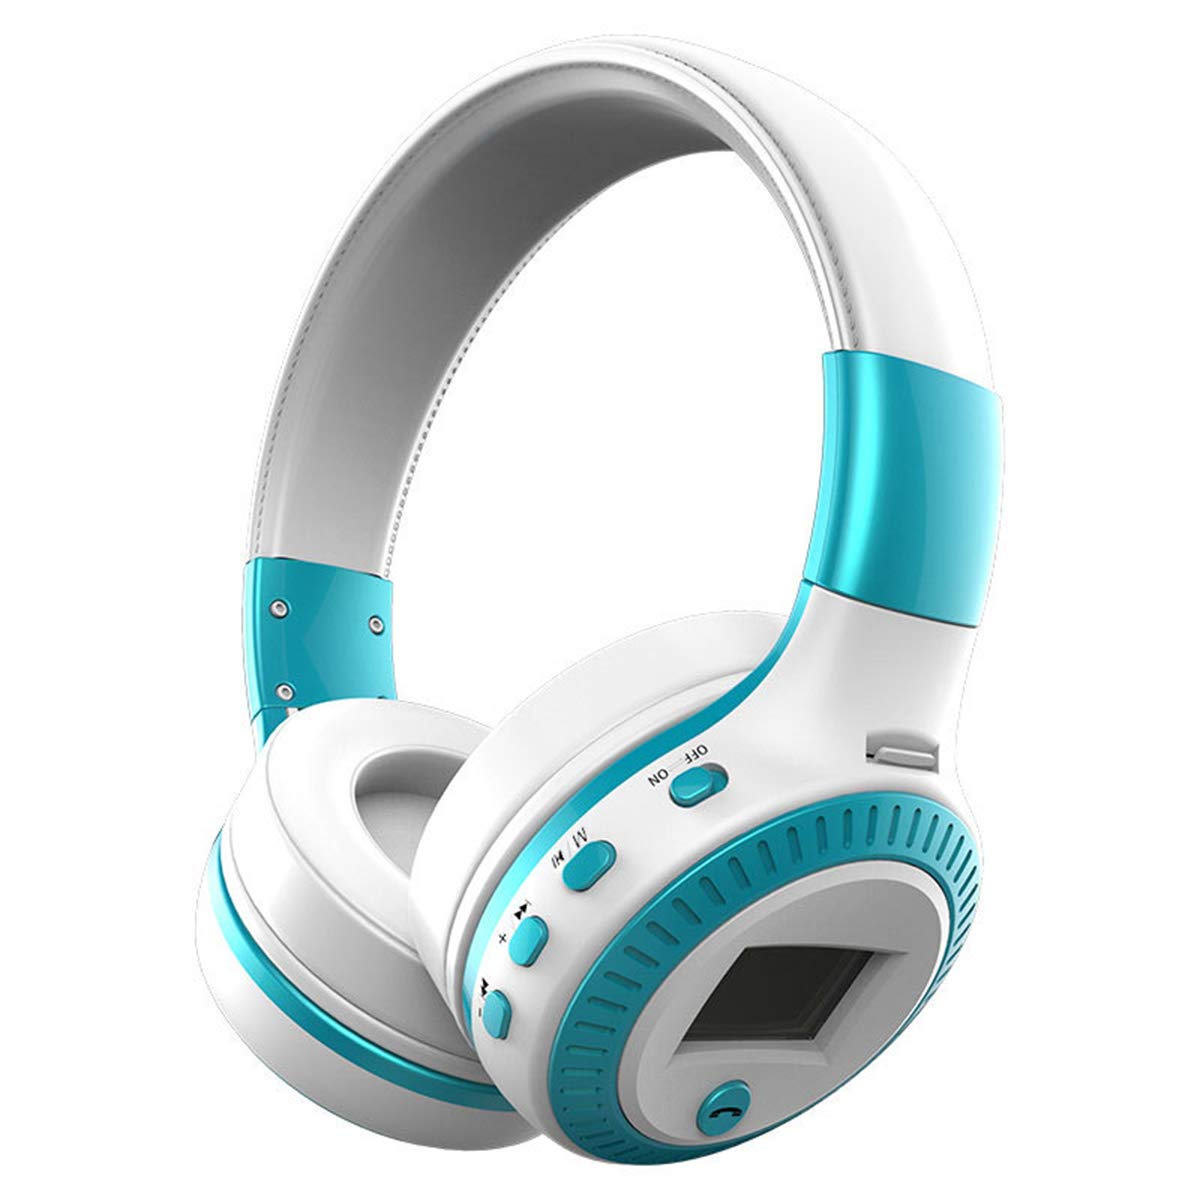 Bluetooth-Headset, kabellose Kopfhörer 5.0 mit Mikrofon, Geräuschunterdrückung, Over-Ear-Kopfhörer mit TF-Karte, FM-Radio und LED-Licht für Handys und alle Bluetooth-fähigen Geräte